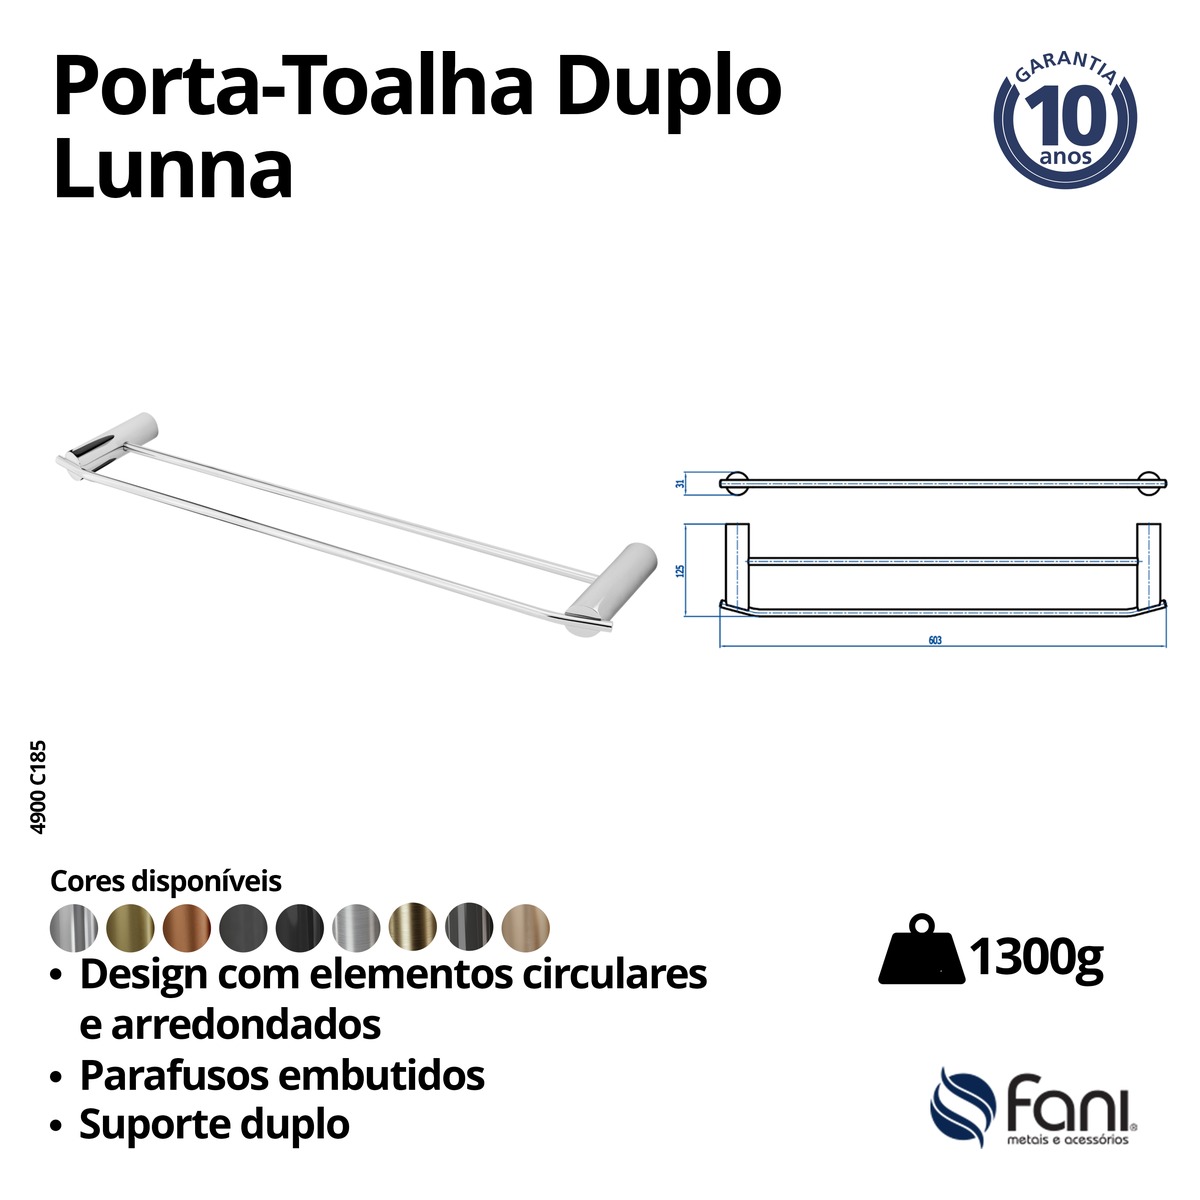 Porta Toalha Reto Longo 60cm Duplo Lunna 4900DV185 D'oro Vecchio Fani